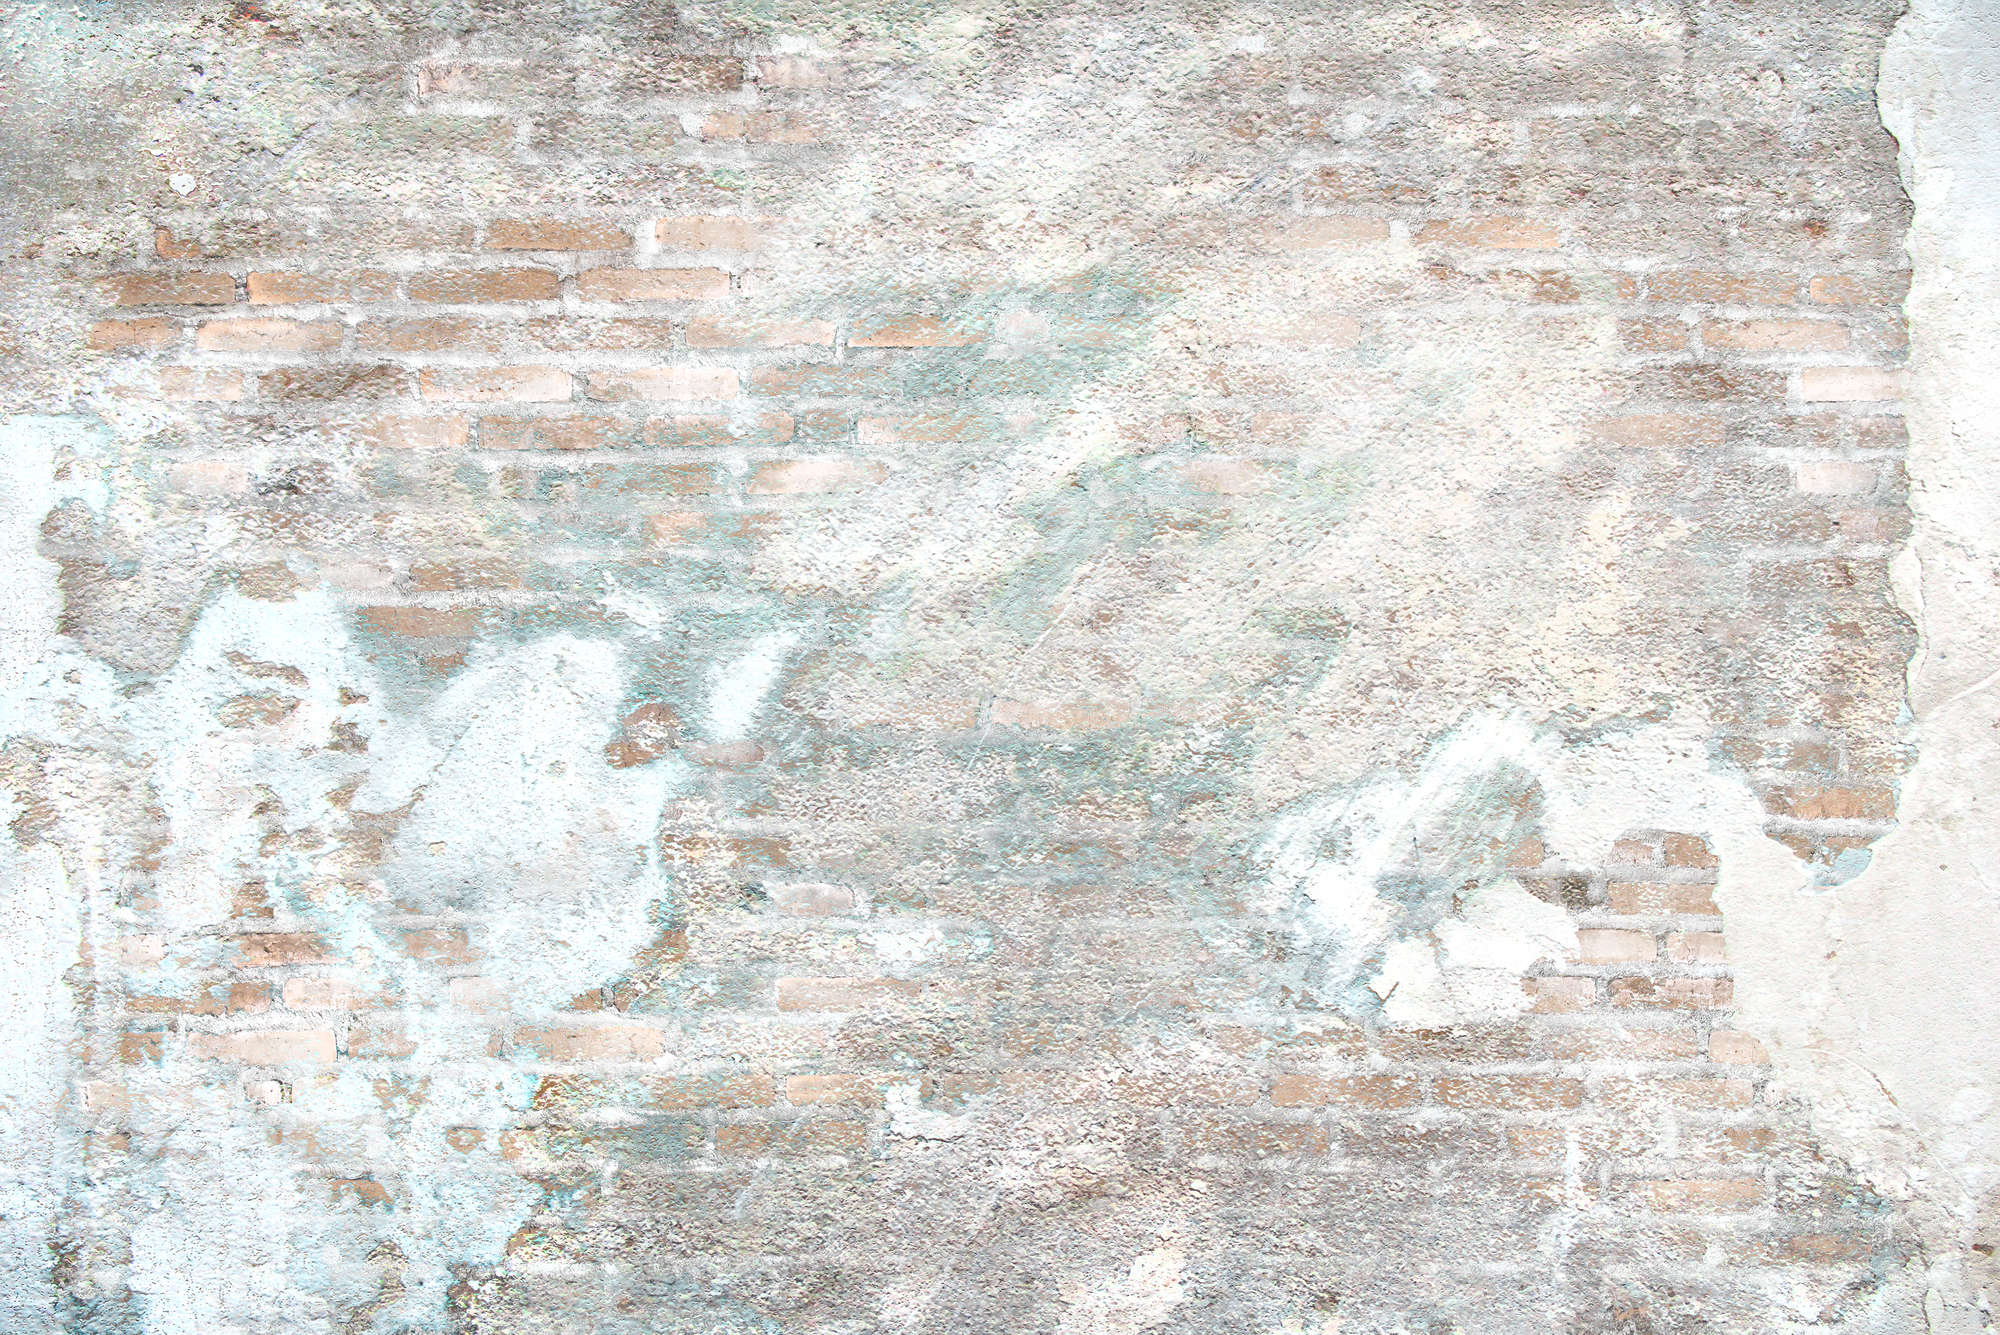             Fototapete Steinwand mit Putzresten – Premium Glattvlies
        